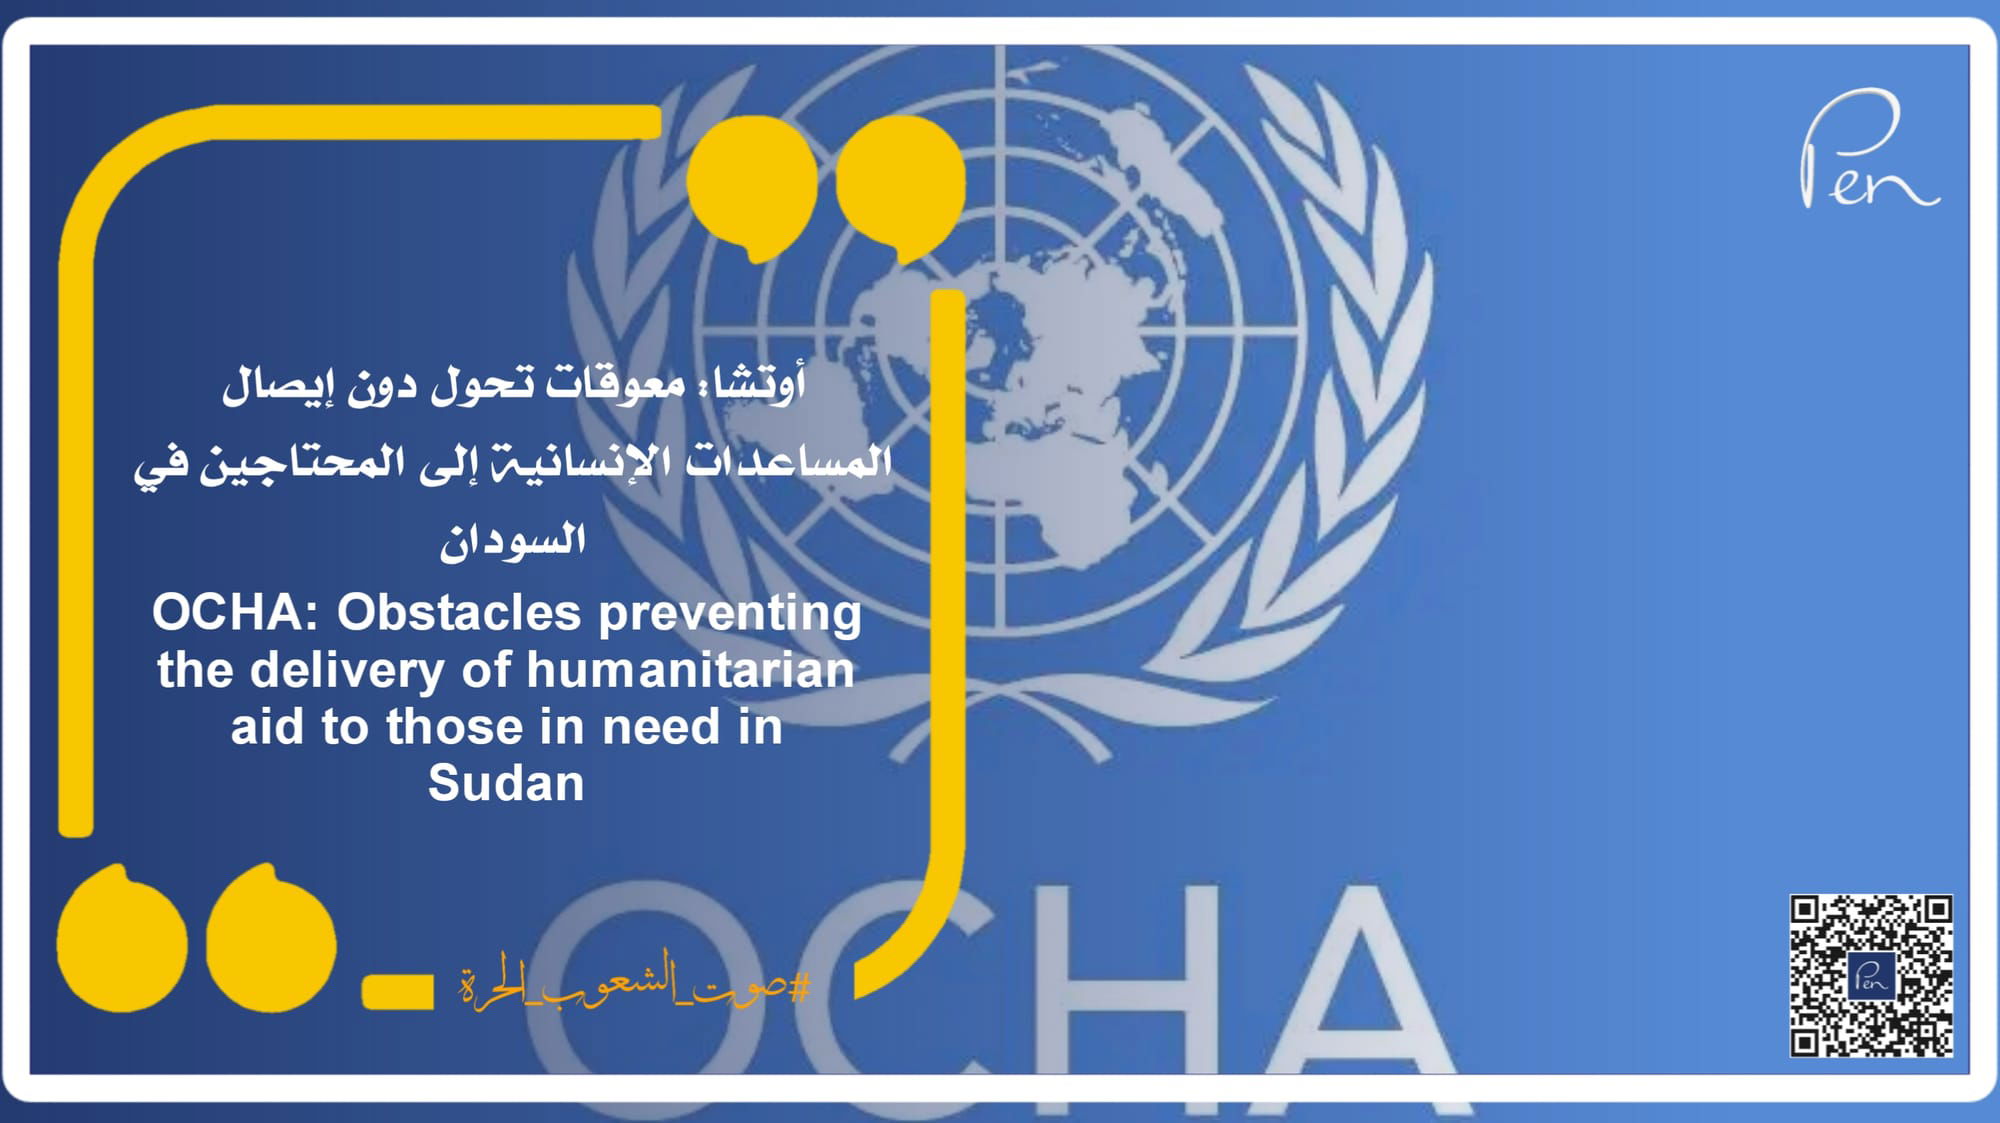 أوتشا: معوقات تحول دون إيصال المساعدات الإنسانية إلى المحتاجين في السودان